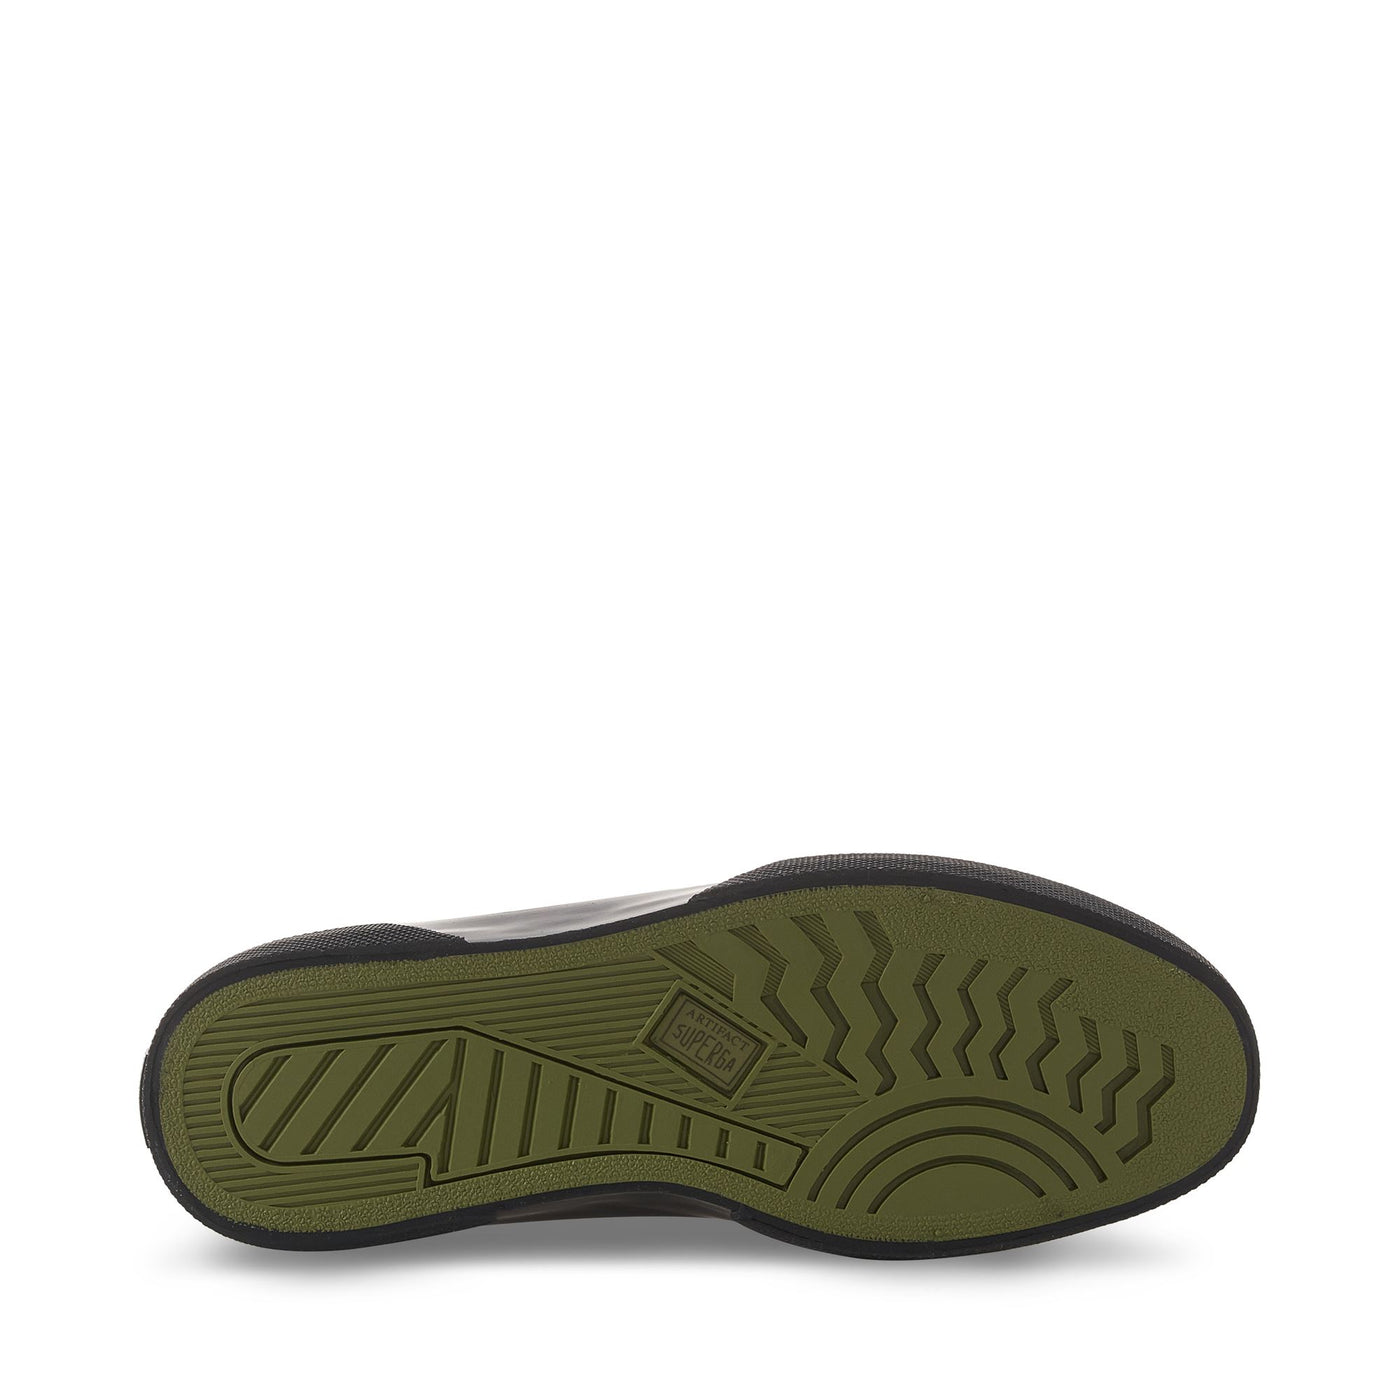 Sneakers Man 2433 TWISTED HERRINGBONE High Cut BLACK-DARK SHADOWS Detail (jpg Rgb)			